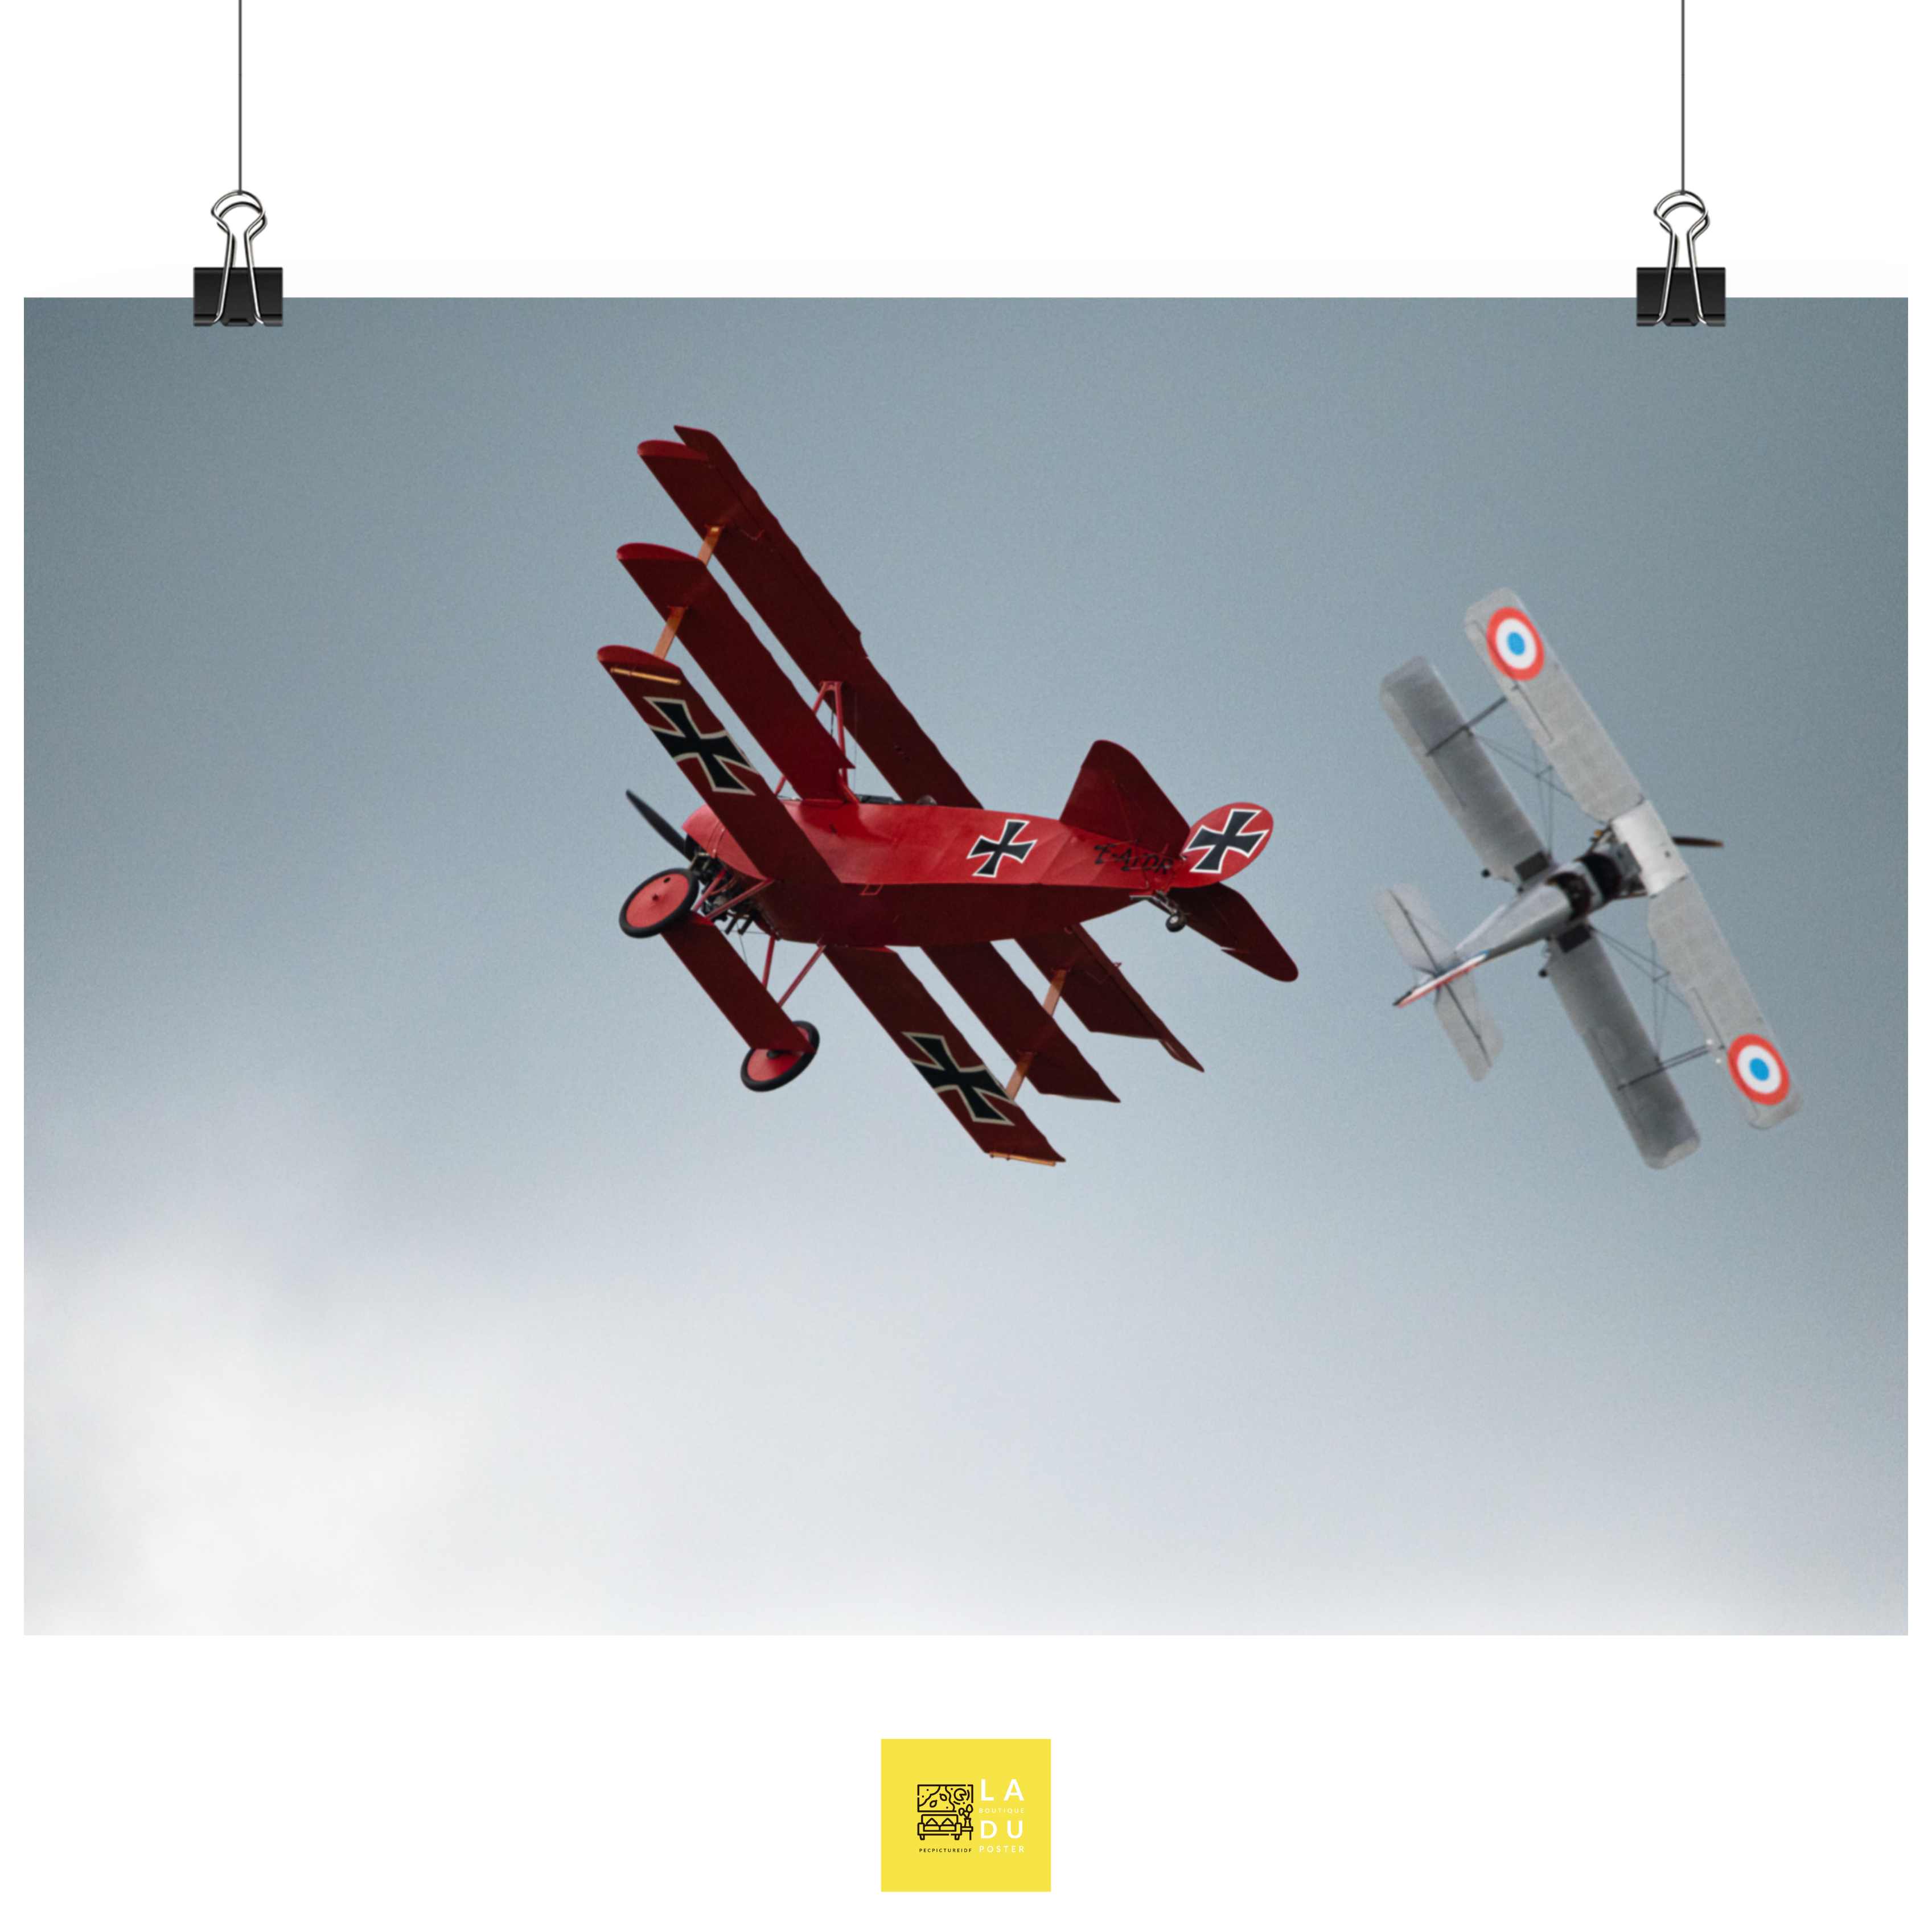 Le baron rouge - Poster - La boutique du poster Français